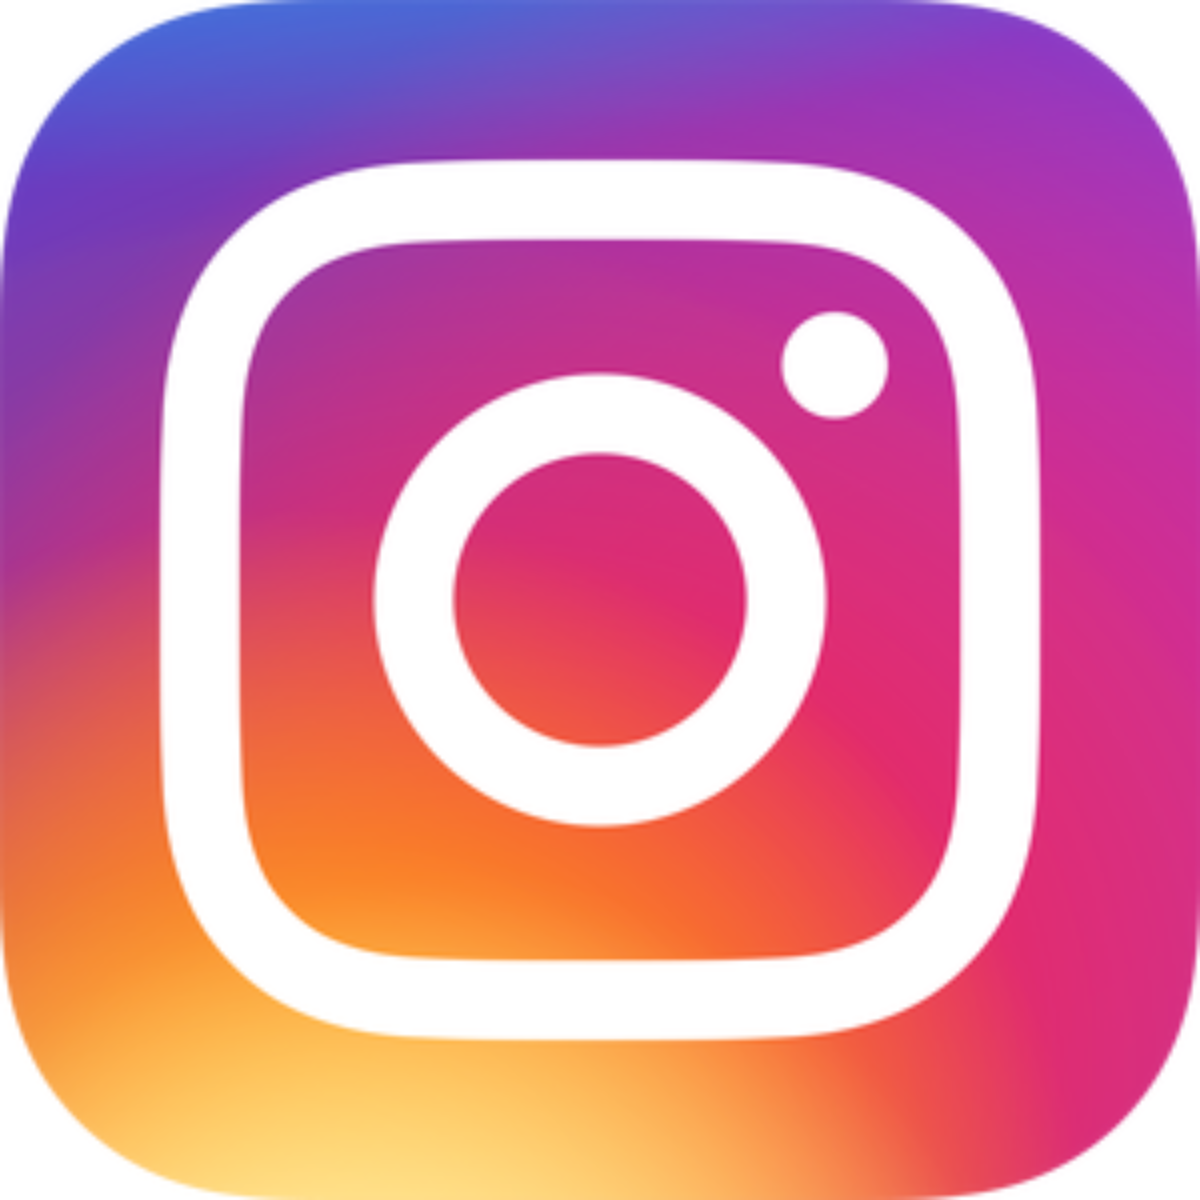 FC-Instagram-logo.png